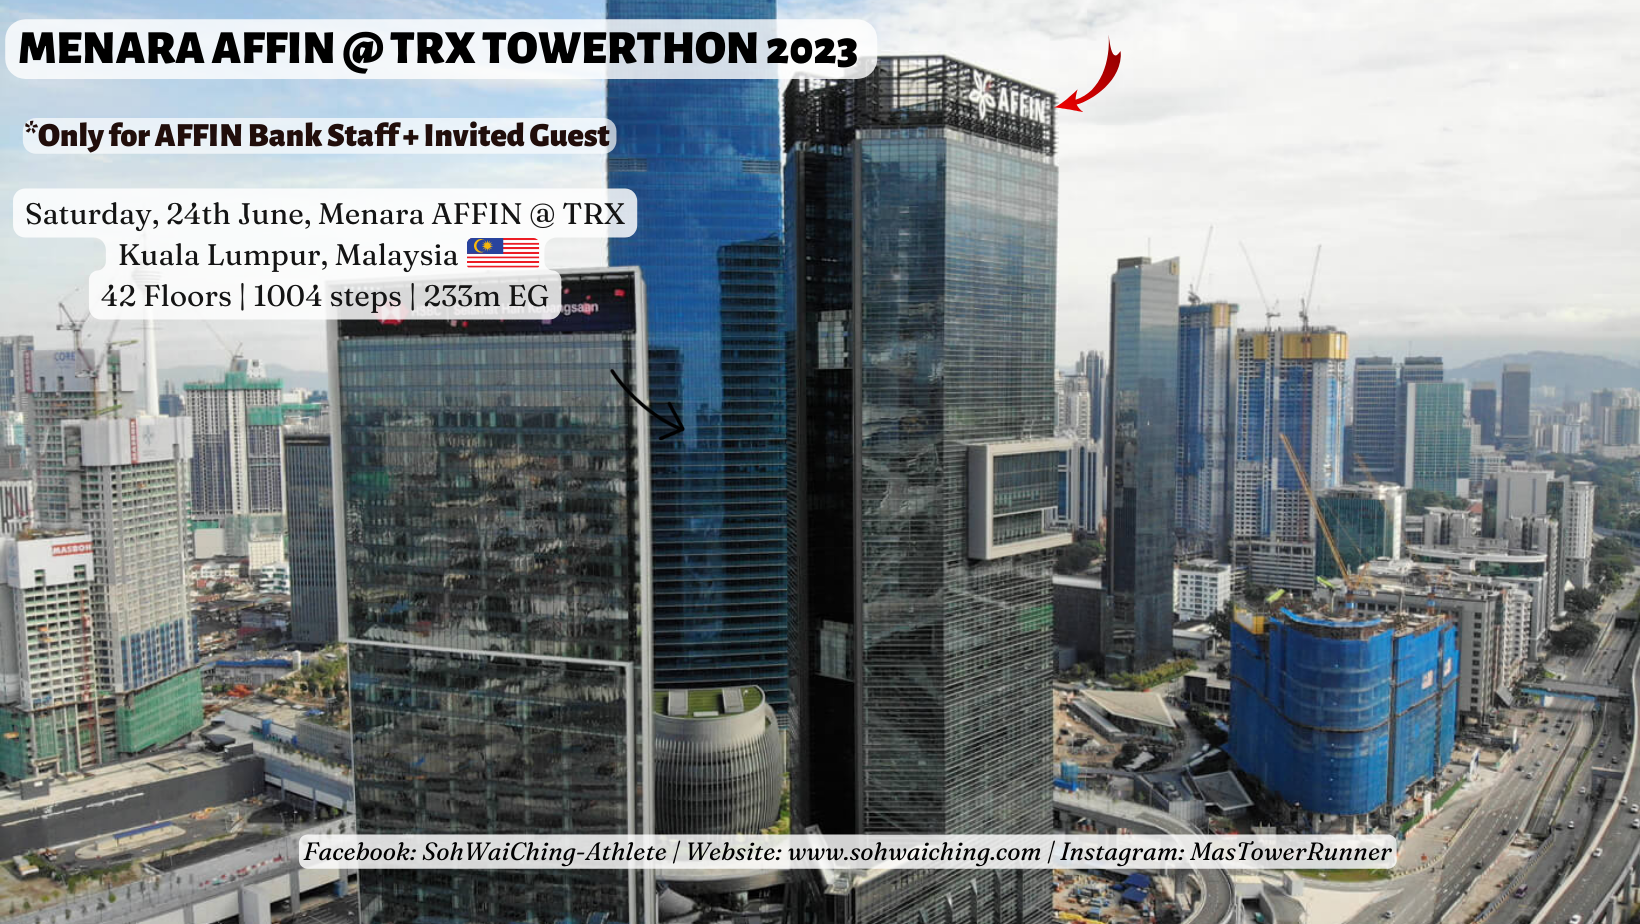 Menara AFFIN @ TRX Towerthon 2023